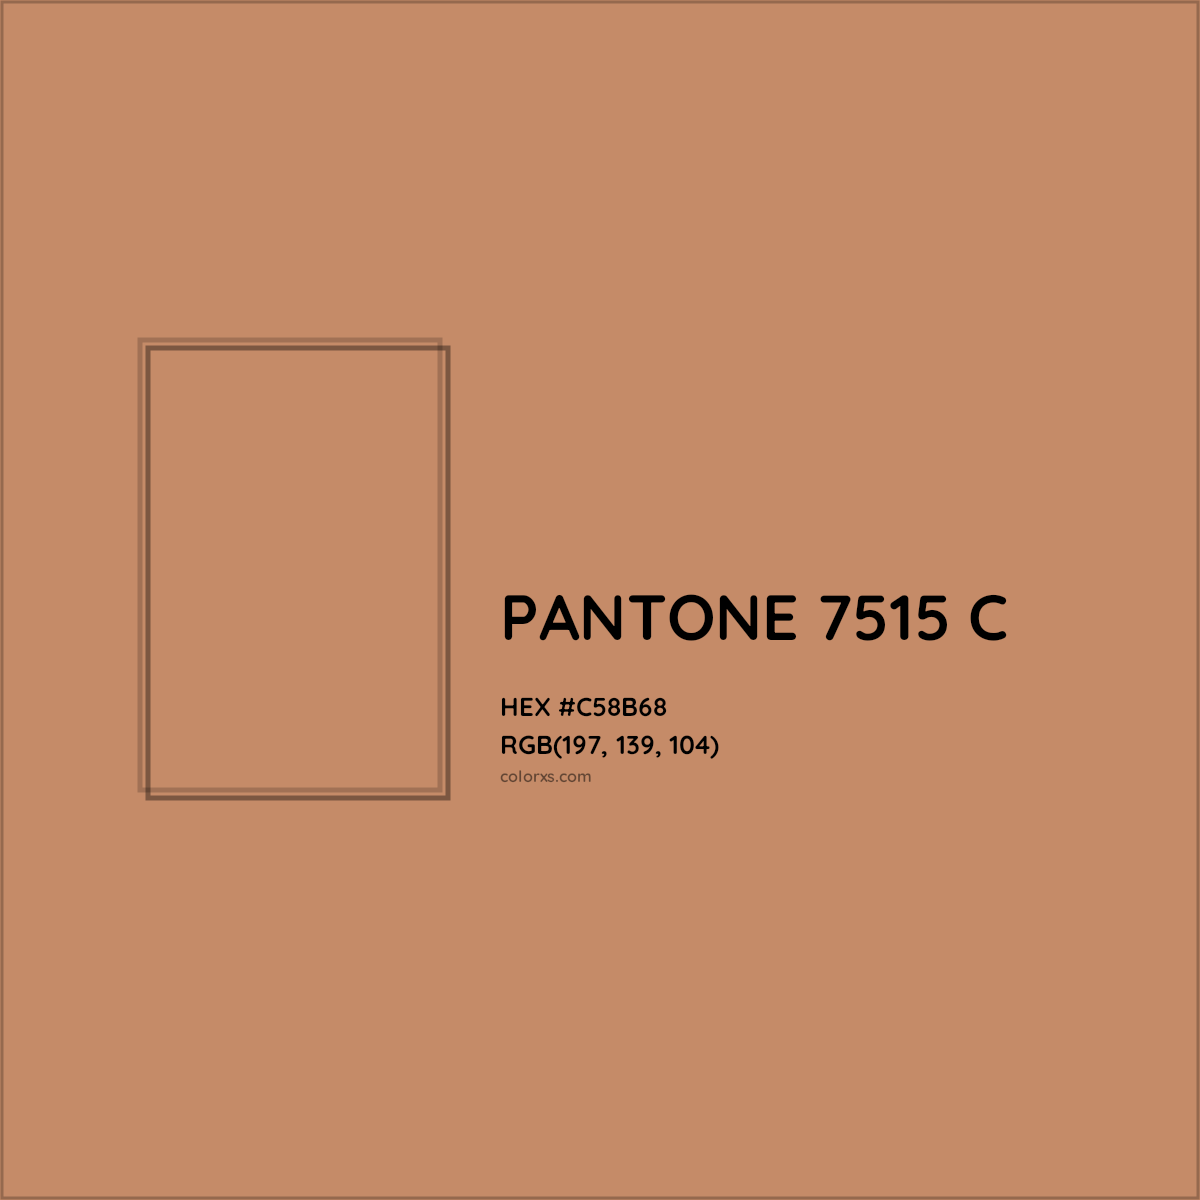 HEX #C58B68 PANTONE 7515 C CMS Pantone PMS - Color Code